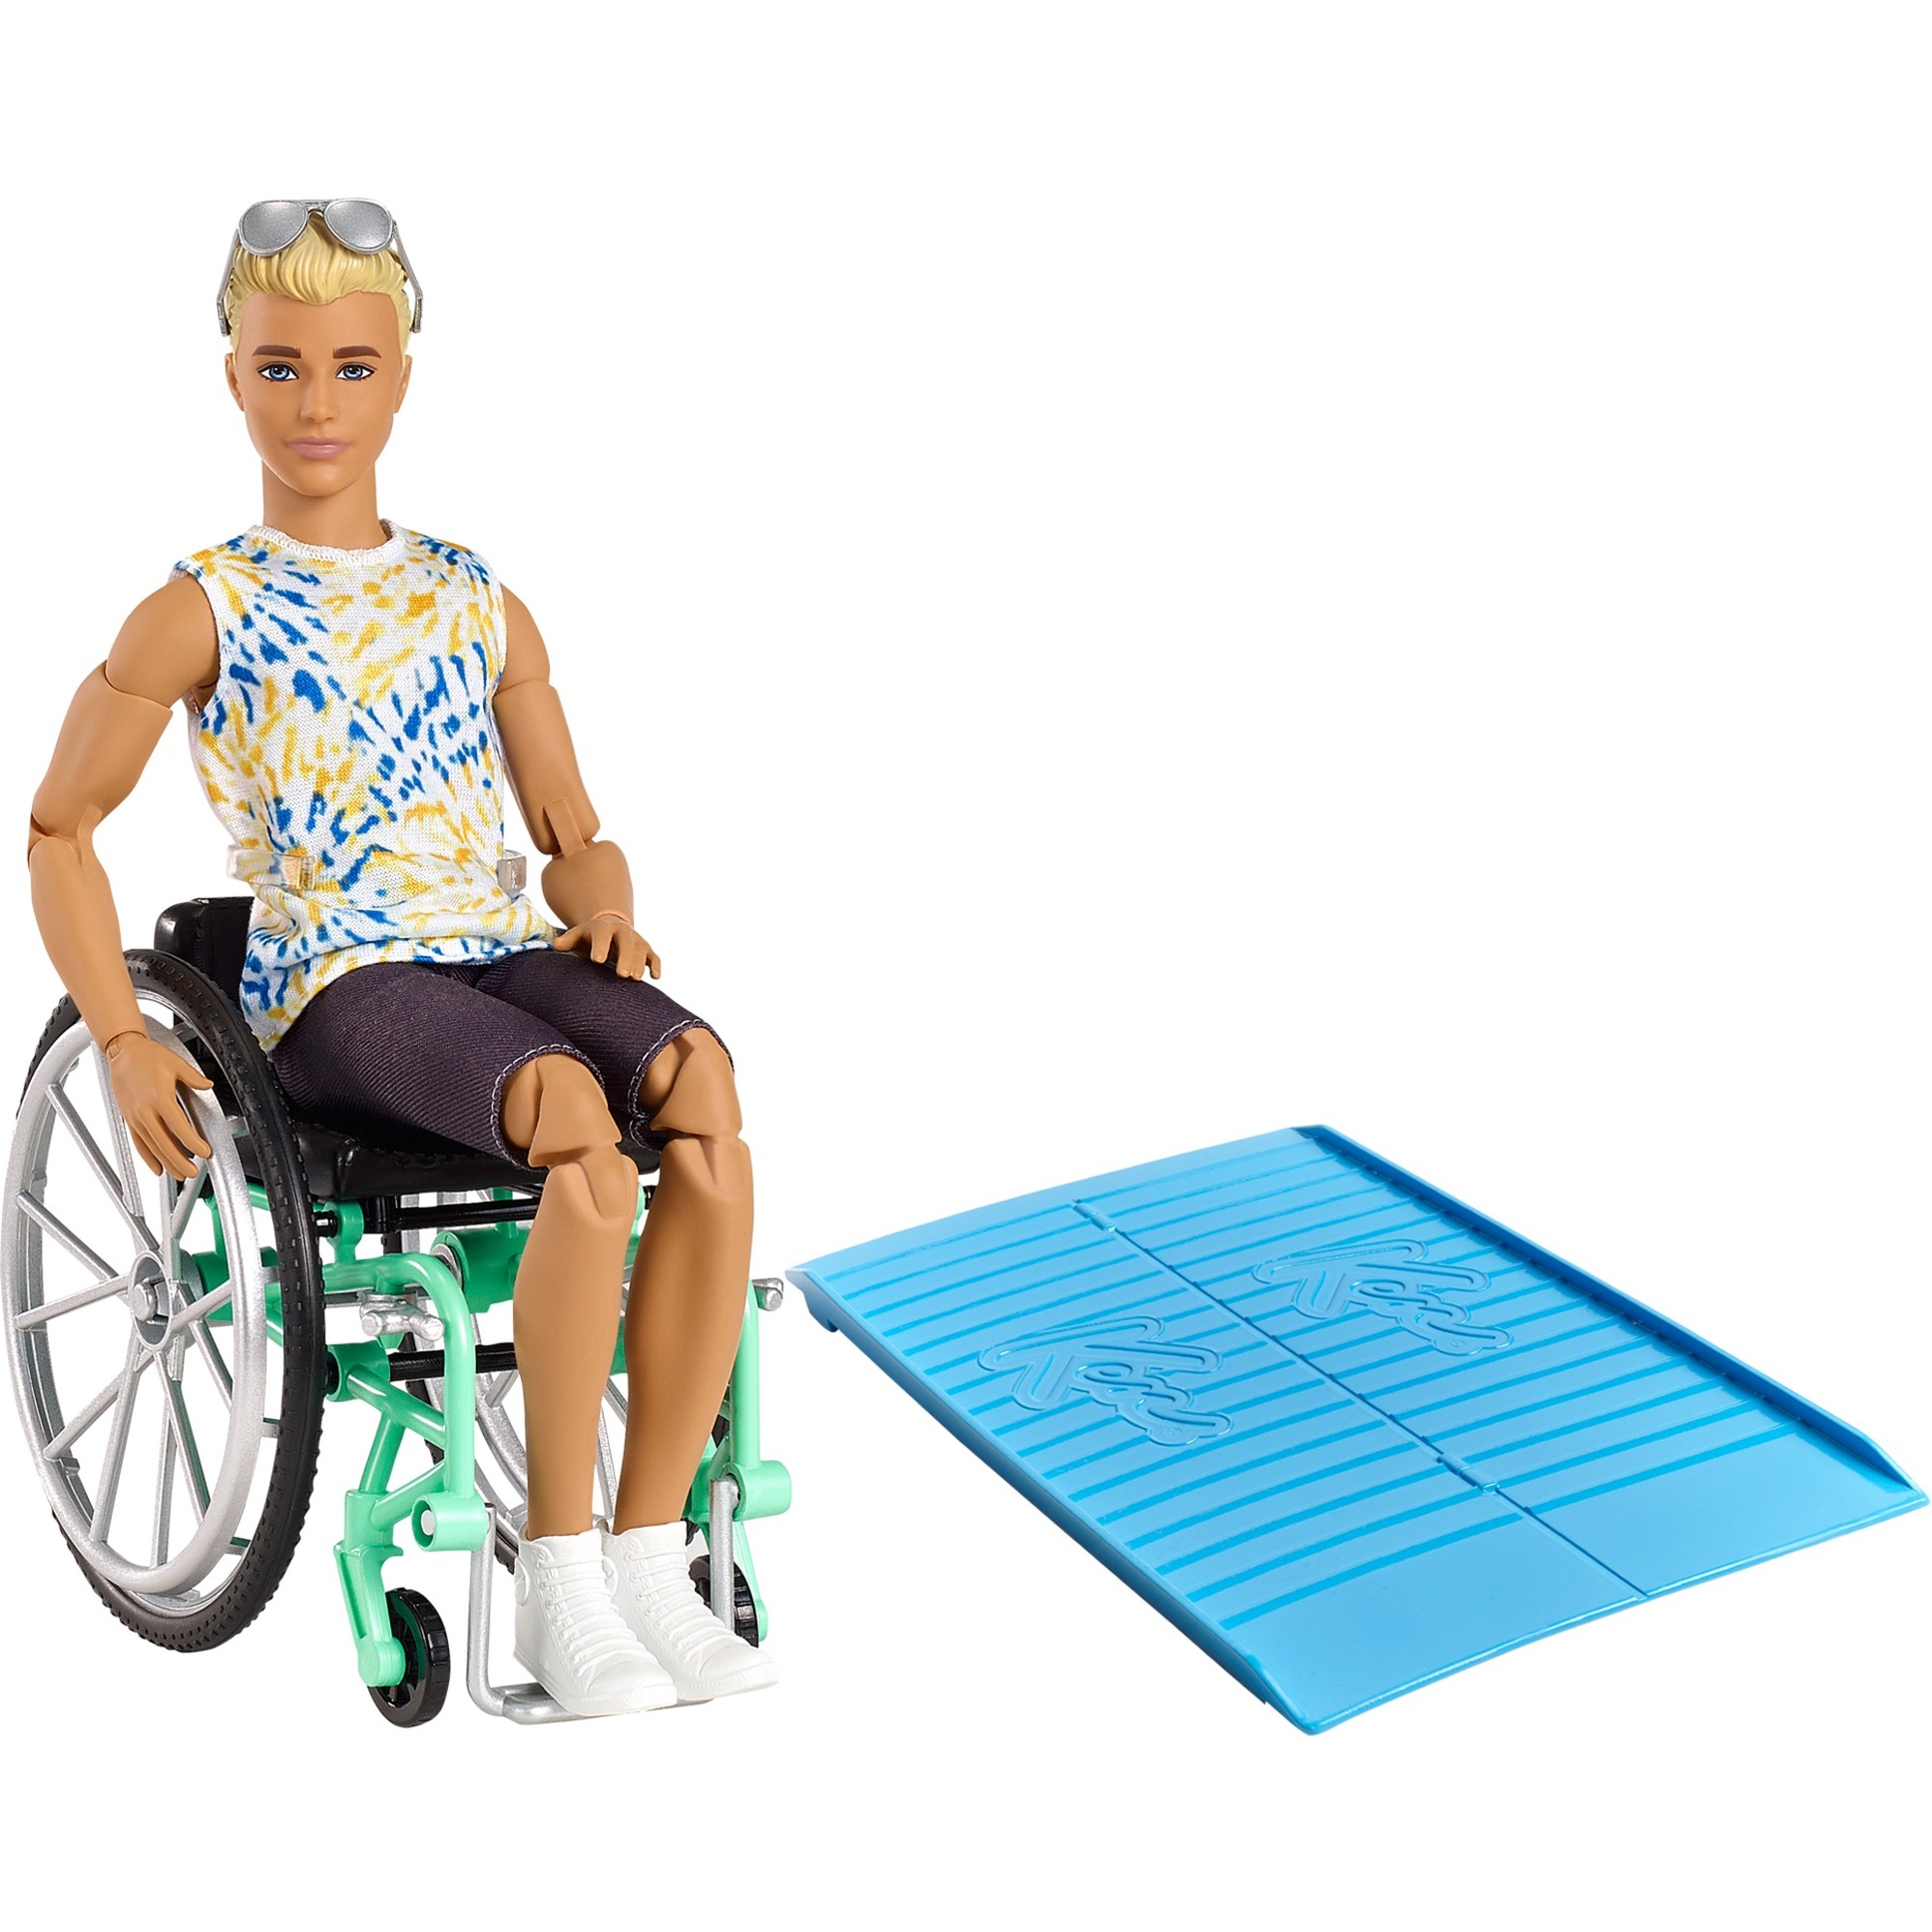 Image of Alternate - Barbie Fashionistas Ken Puppe (blond) mit Rollstuhl online einkaufen bei Alternate